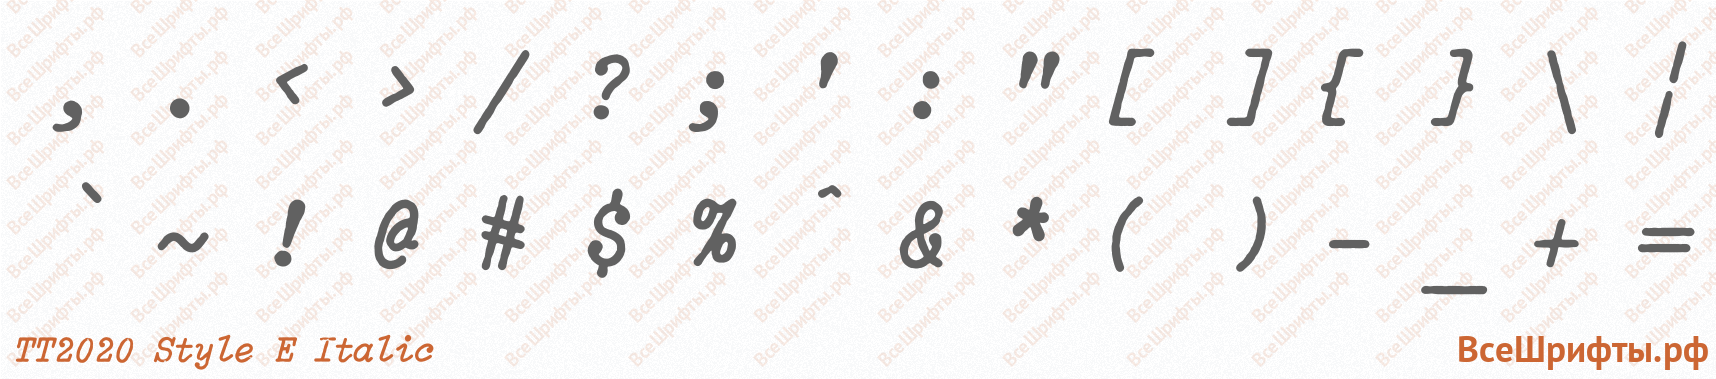 Шрифт TT2020 Style E Italic со знаками препинания и пунктуации